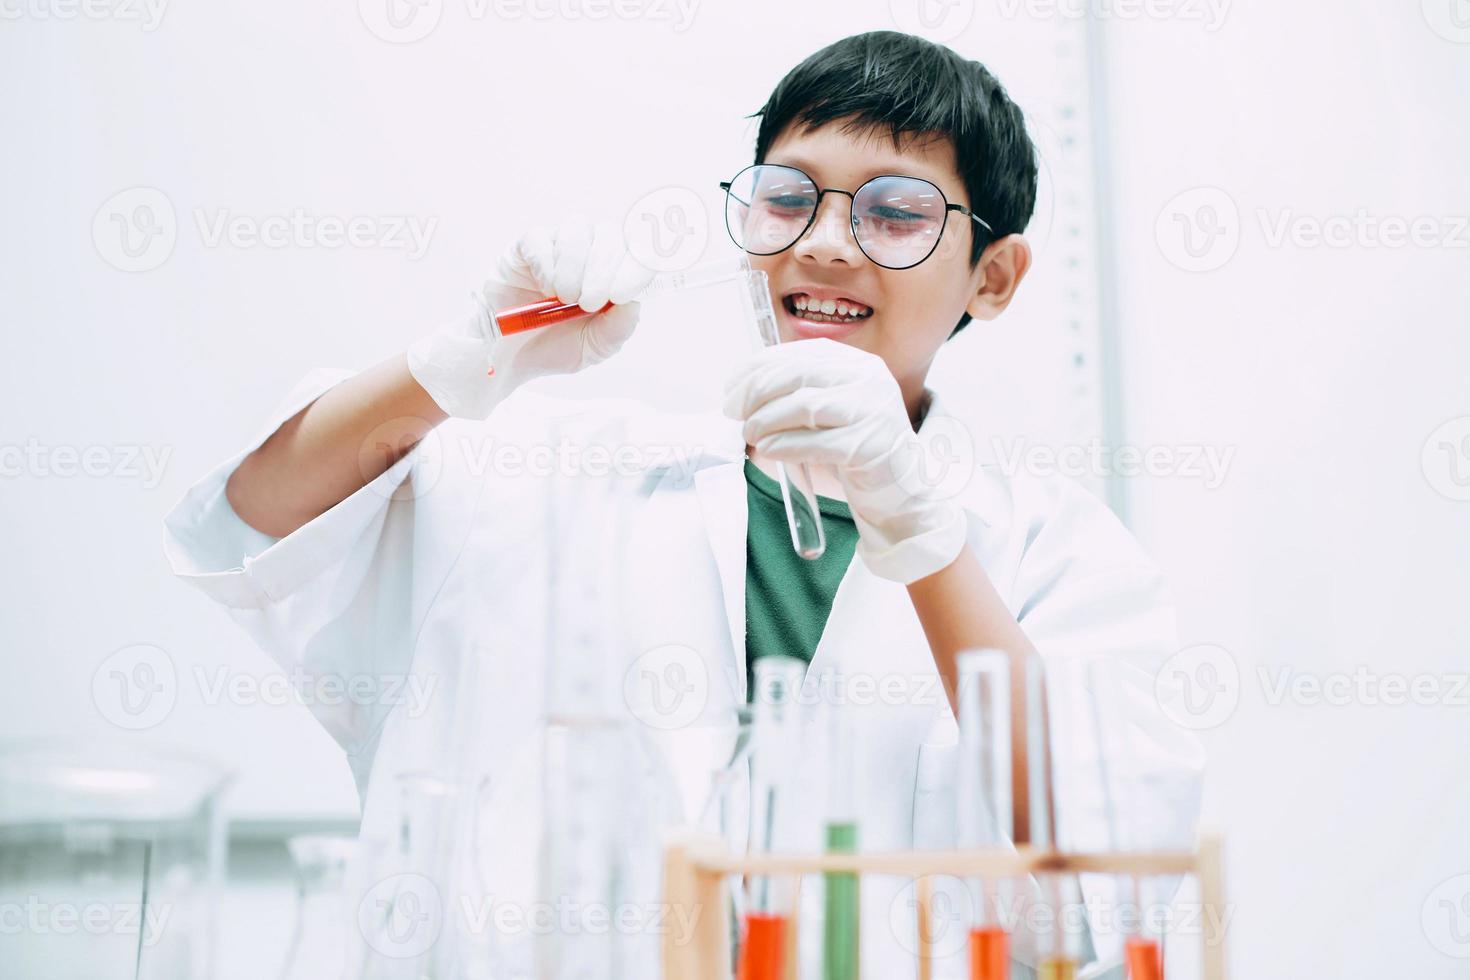 étudiant asiatique heureux avec des tubes à essai étudiant la chimie au laboratoire de l'école, versant du liquide. journée nationale de la science, journée mondiale de la science photo